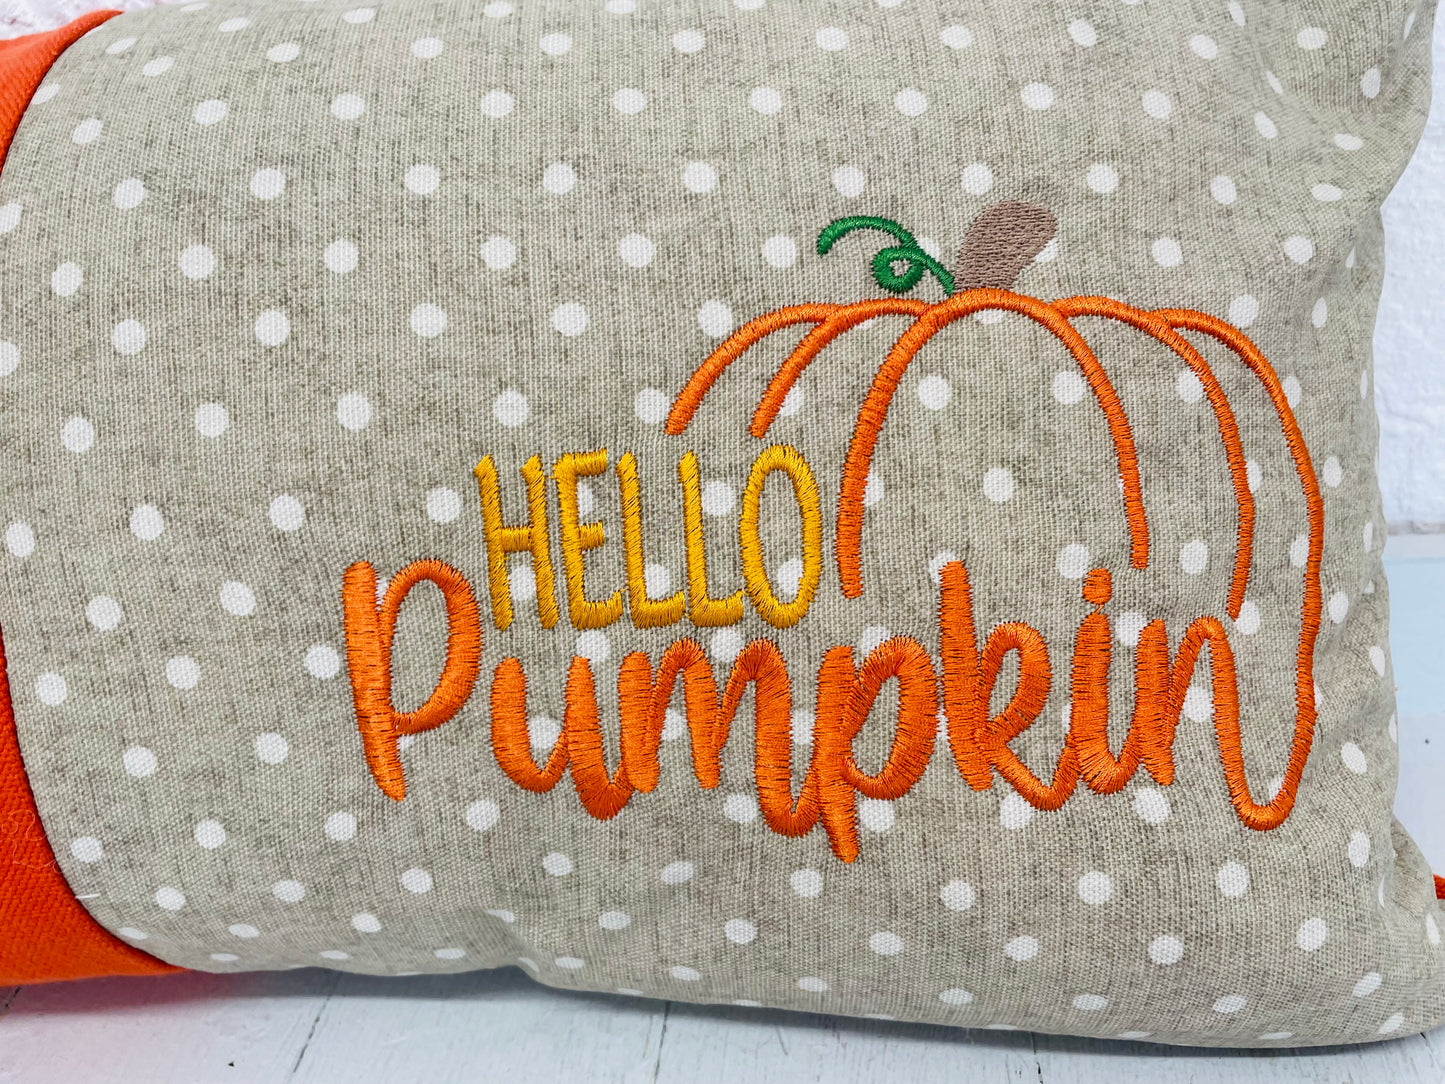 Hello Pumpkin Panel Cushion